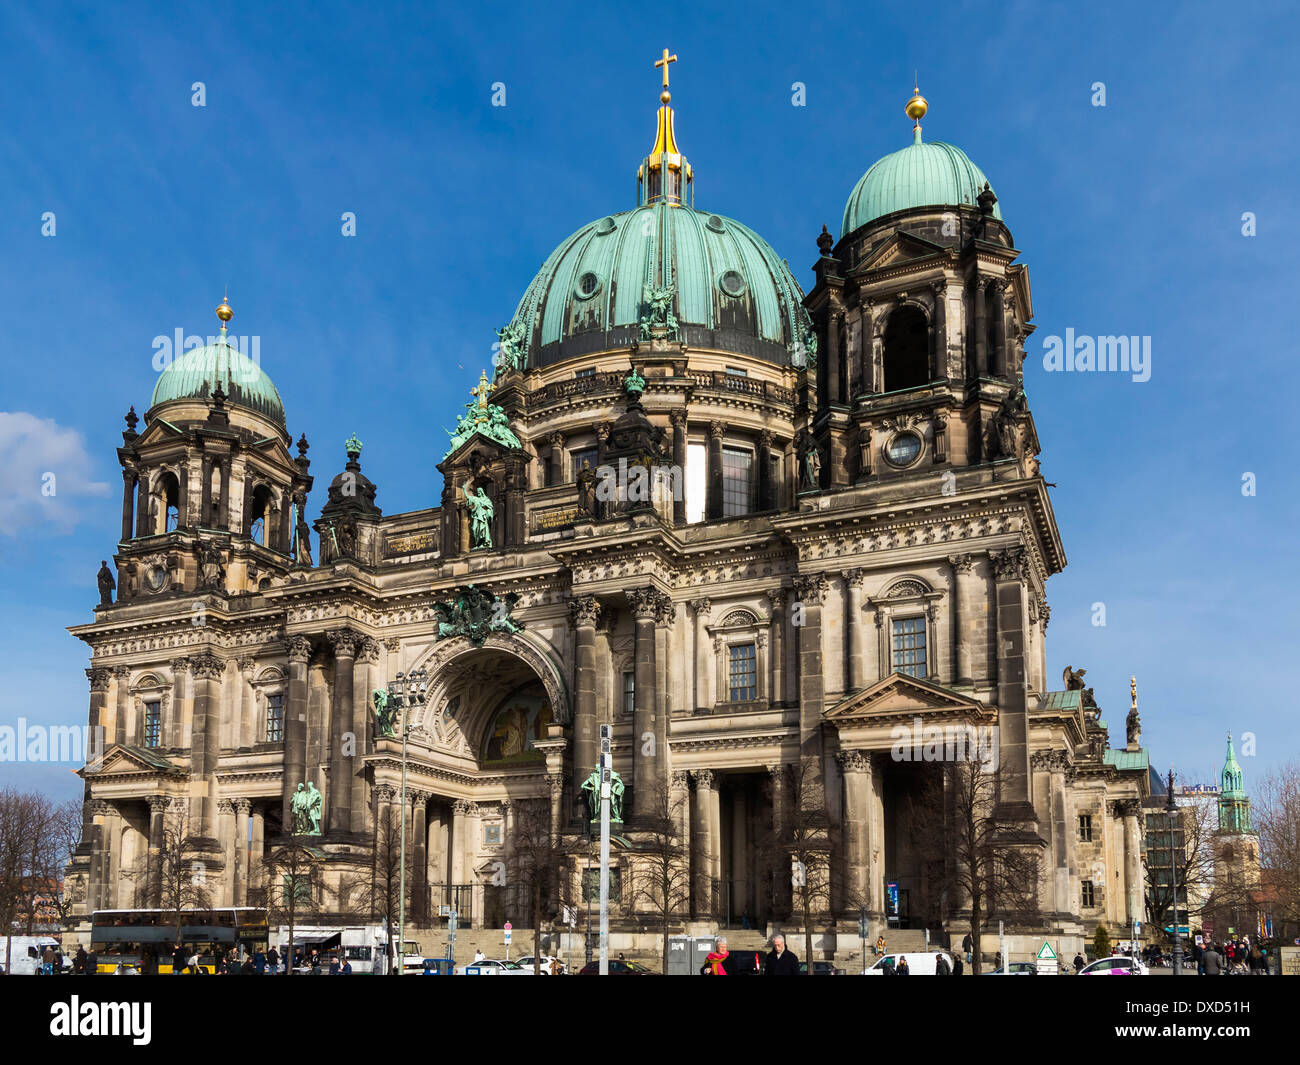 Vue de la façade de la vieille ville historique de Berliner Dom, Berlin, Allemagne, Europe - Cathédrale de Berlin Banque D'Images